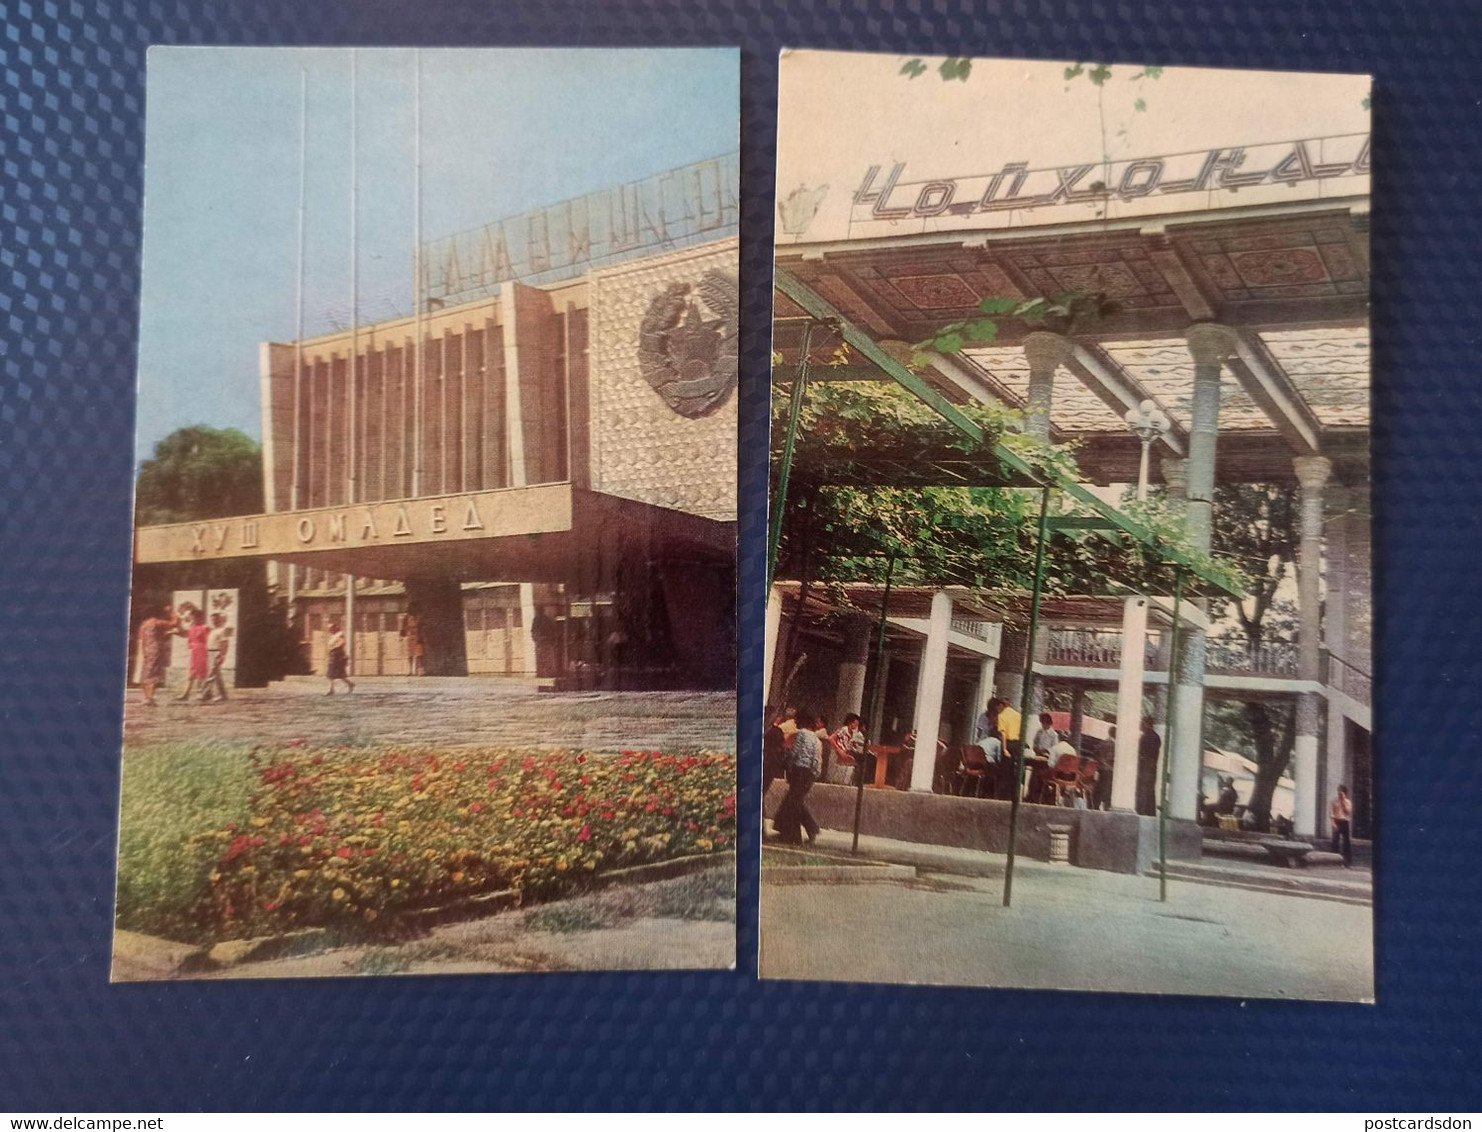 TAJIKISTAN  Dushanbe  Capital.  12 Postcards Lot  - Old USSR Postcard  - 1970s Lenin Monument - Tajikistan